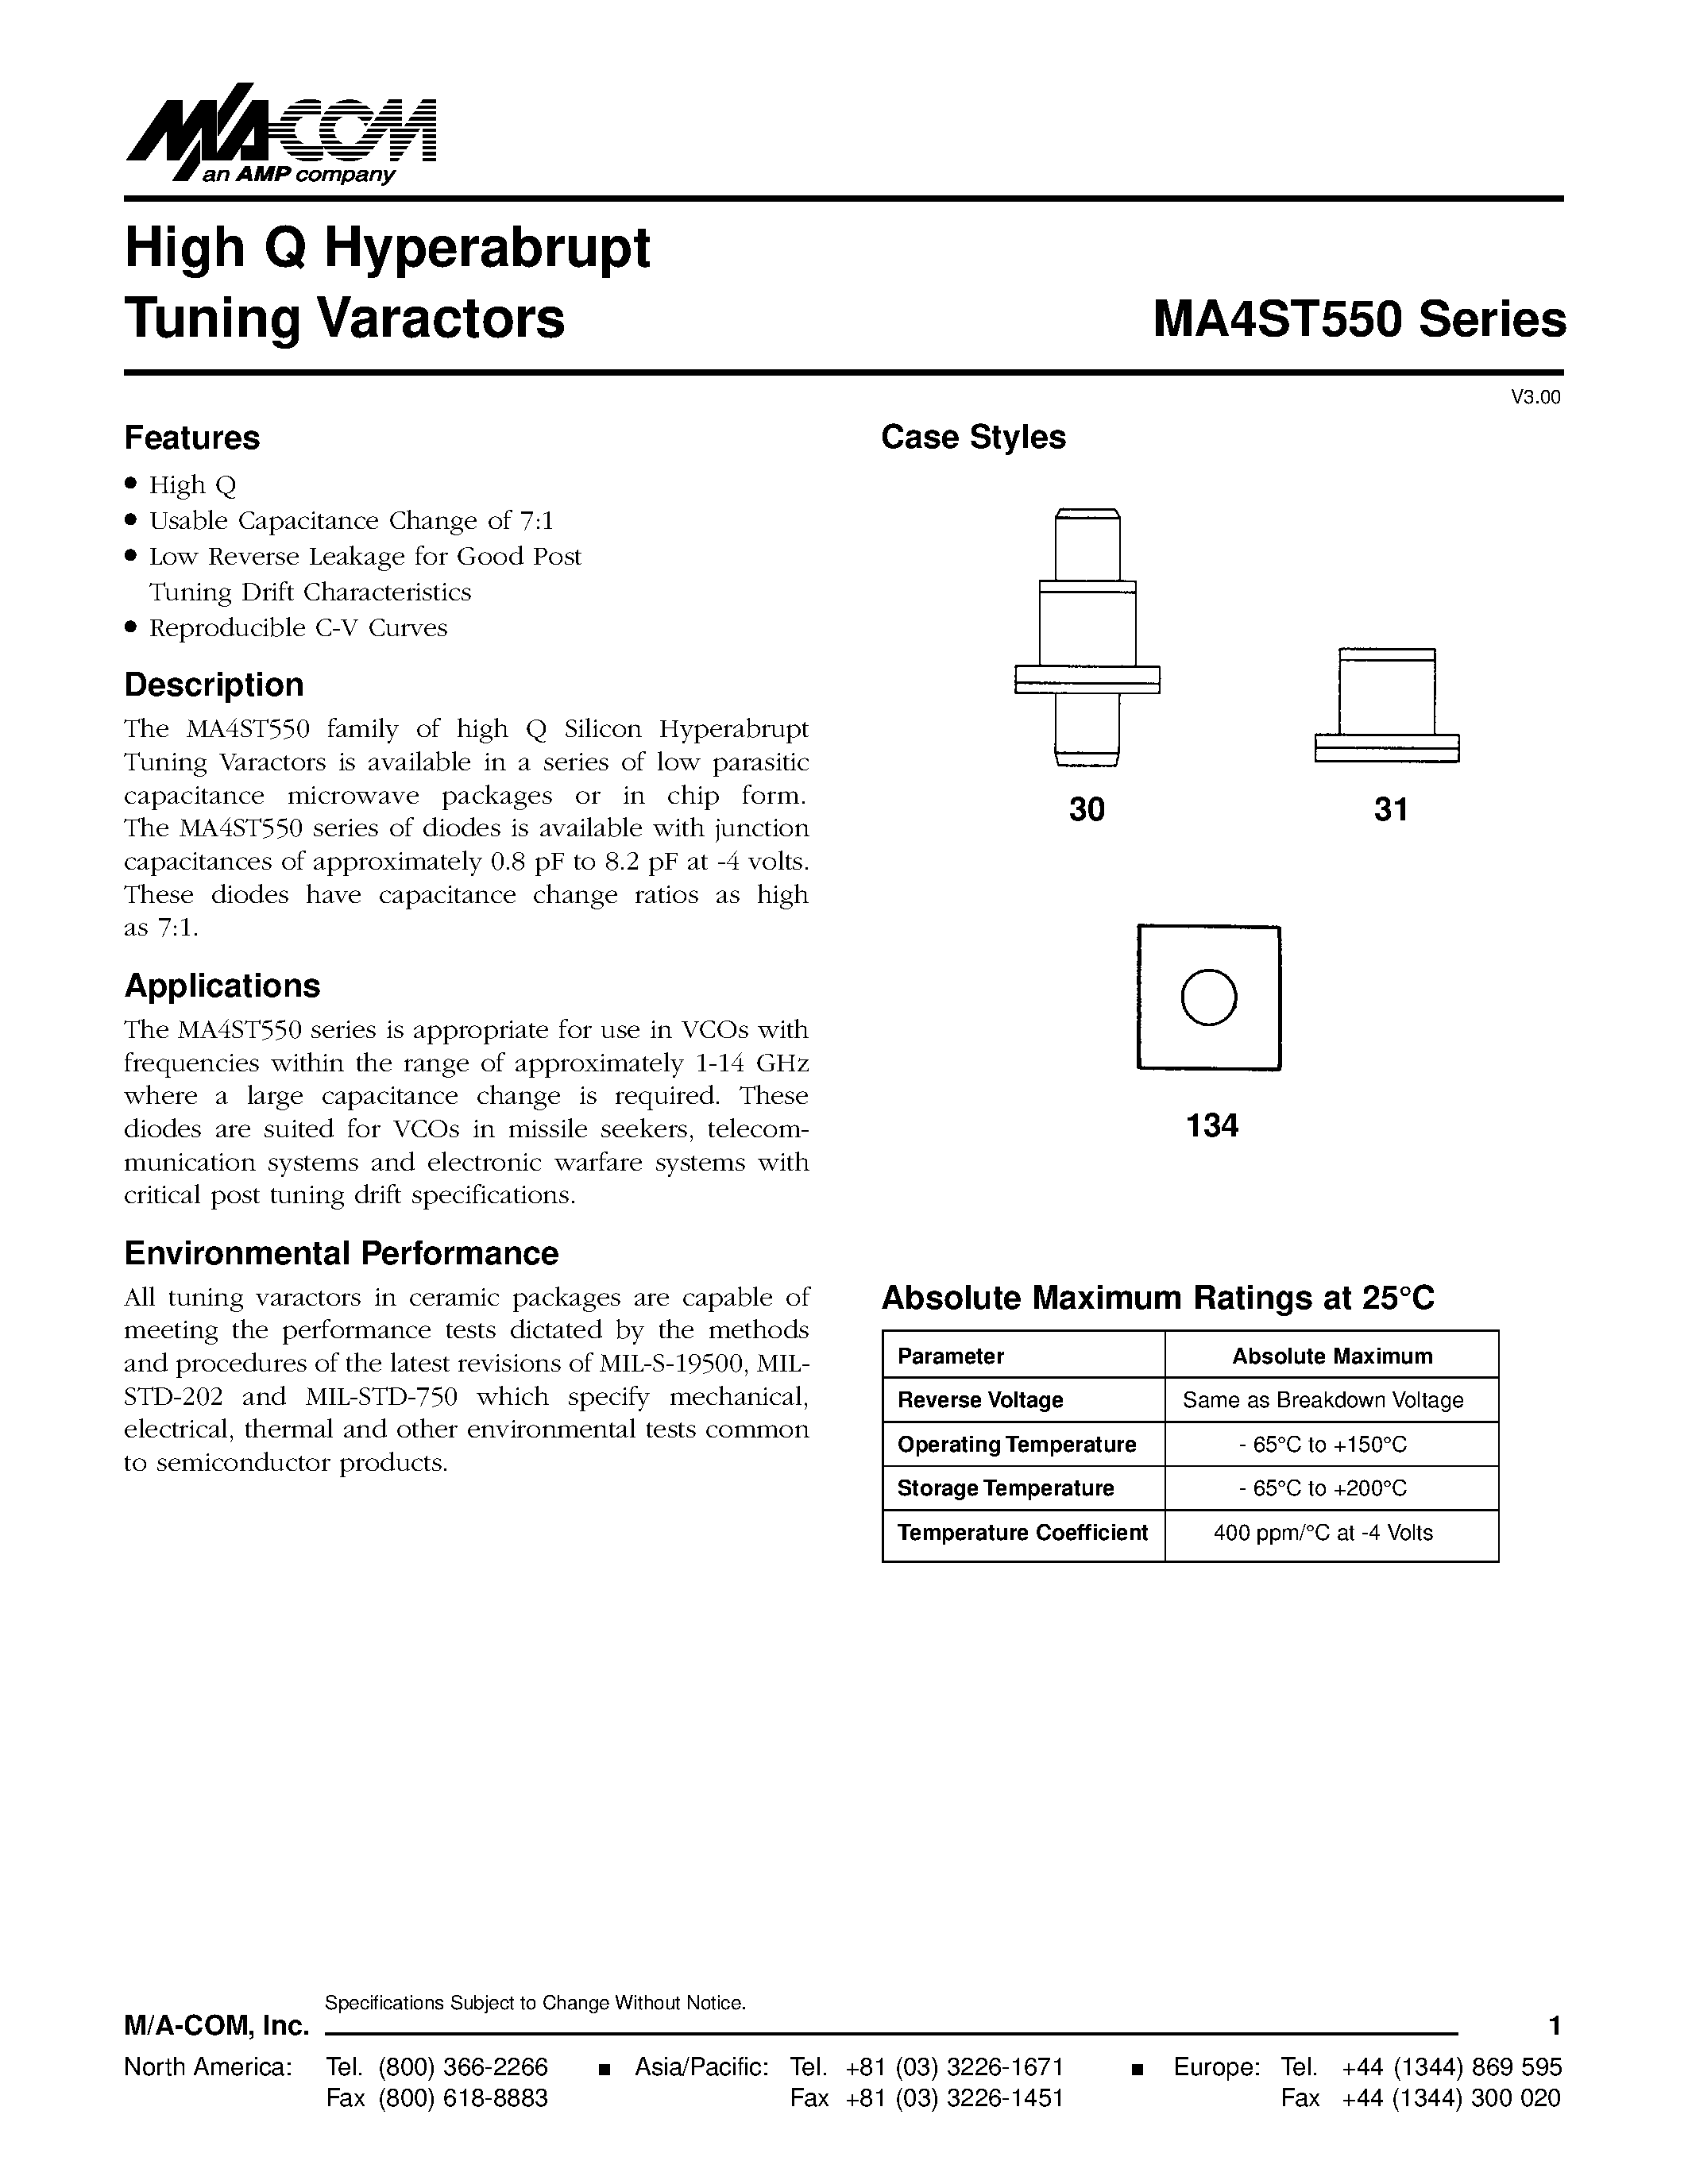 Даташит MA4ST559 - High Q Hyperabrupt Tuning Varactors страница 1